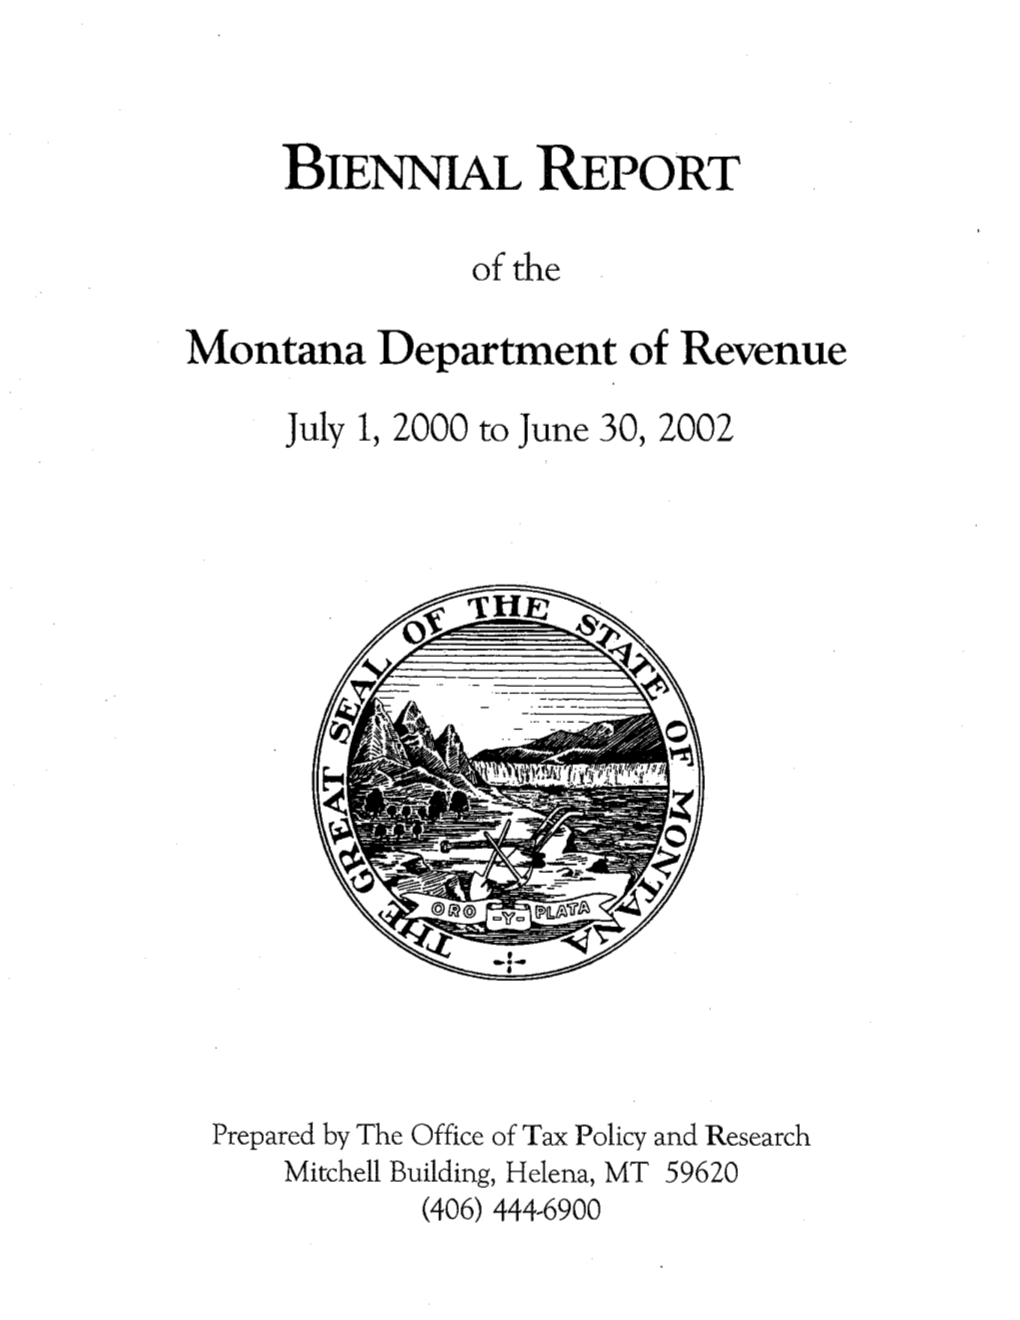 BIENNEAL REPORT Montana Department of Revenue